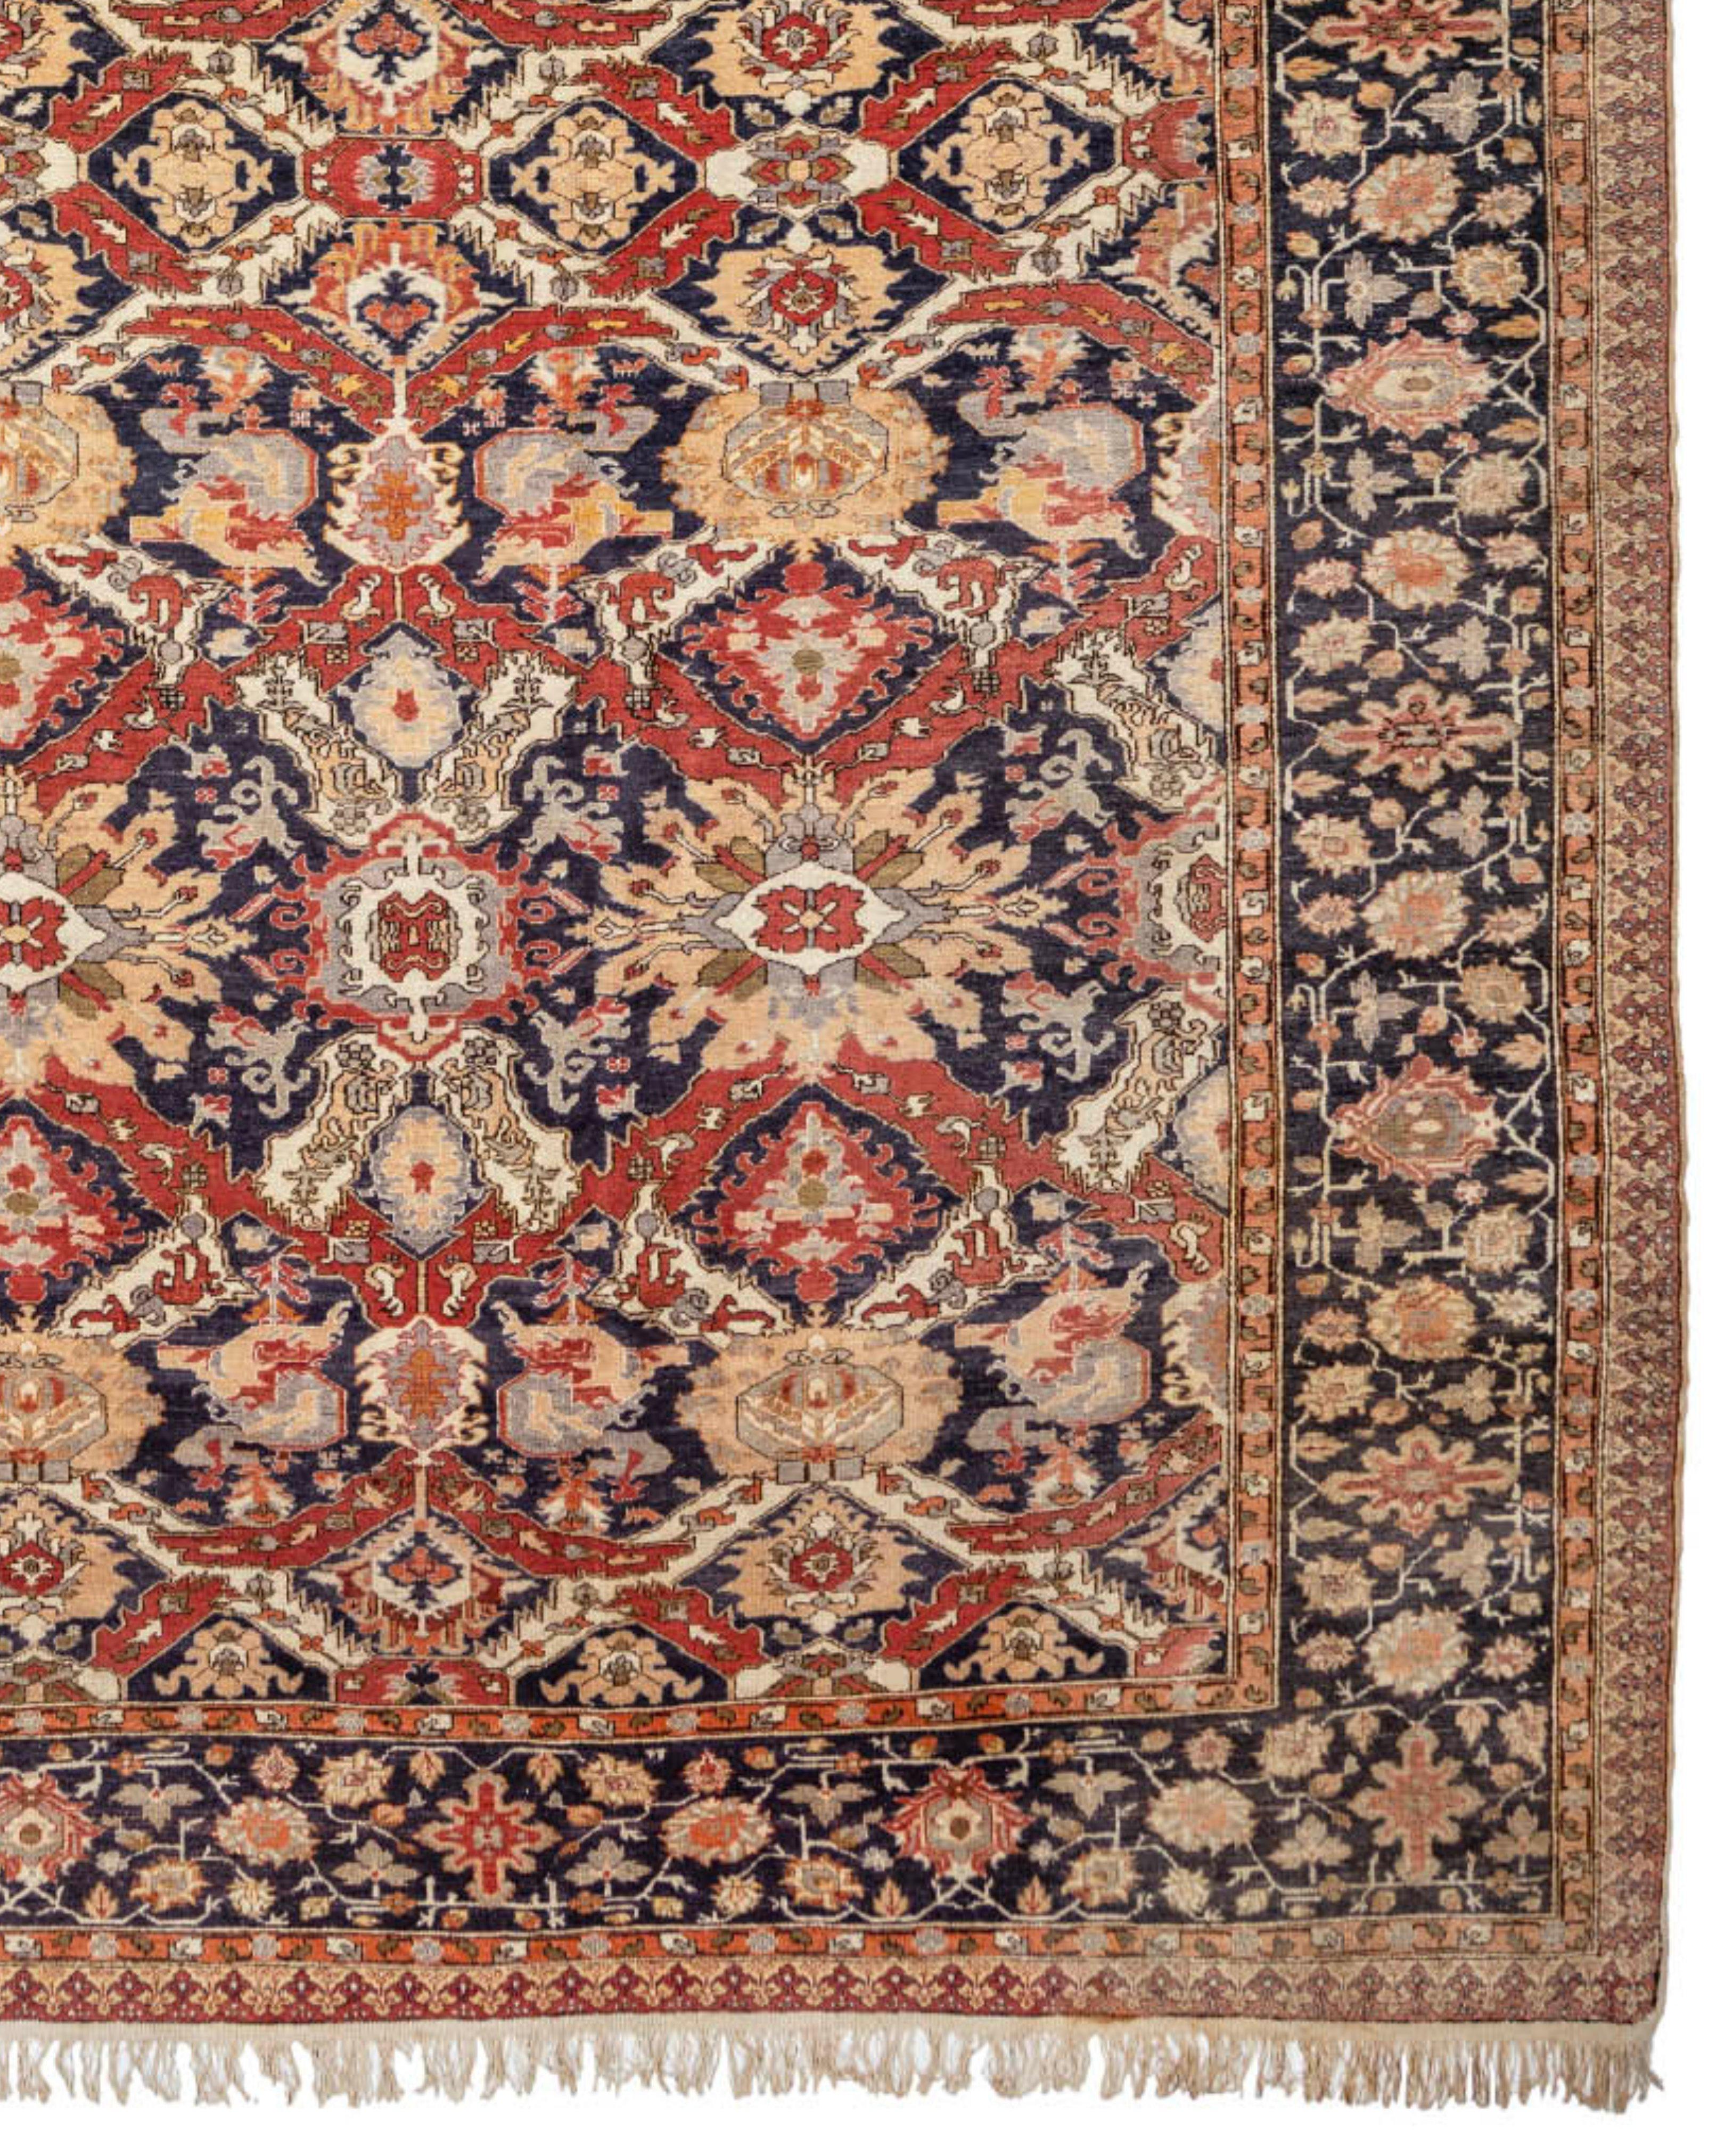 Antiker großer türkischer Kayseri-Teppich, um 1900

Zusätzliche Informationen:
Abmessungen: 12'8